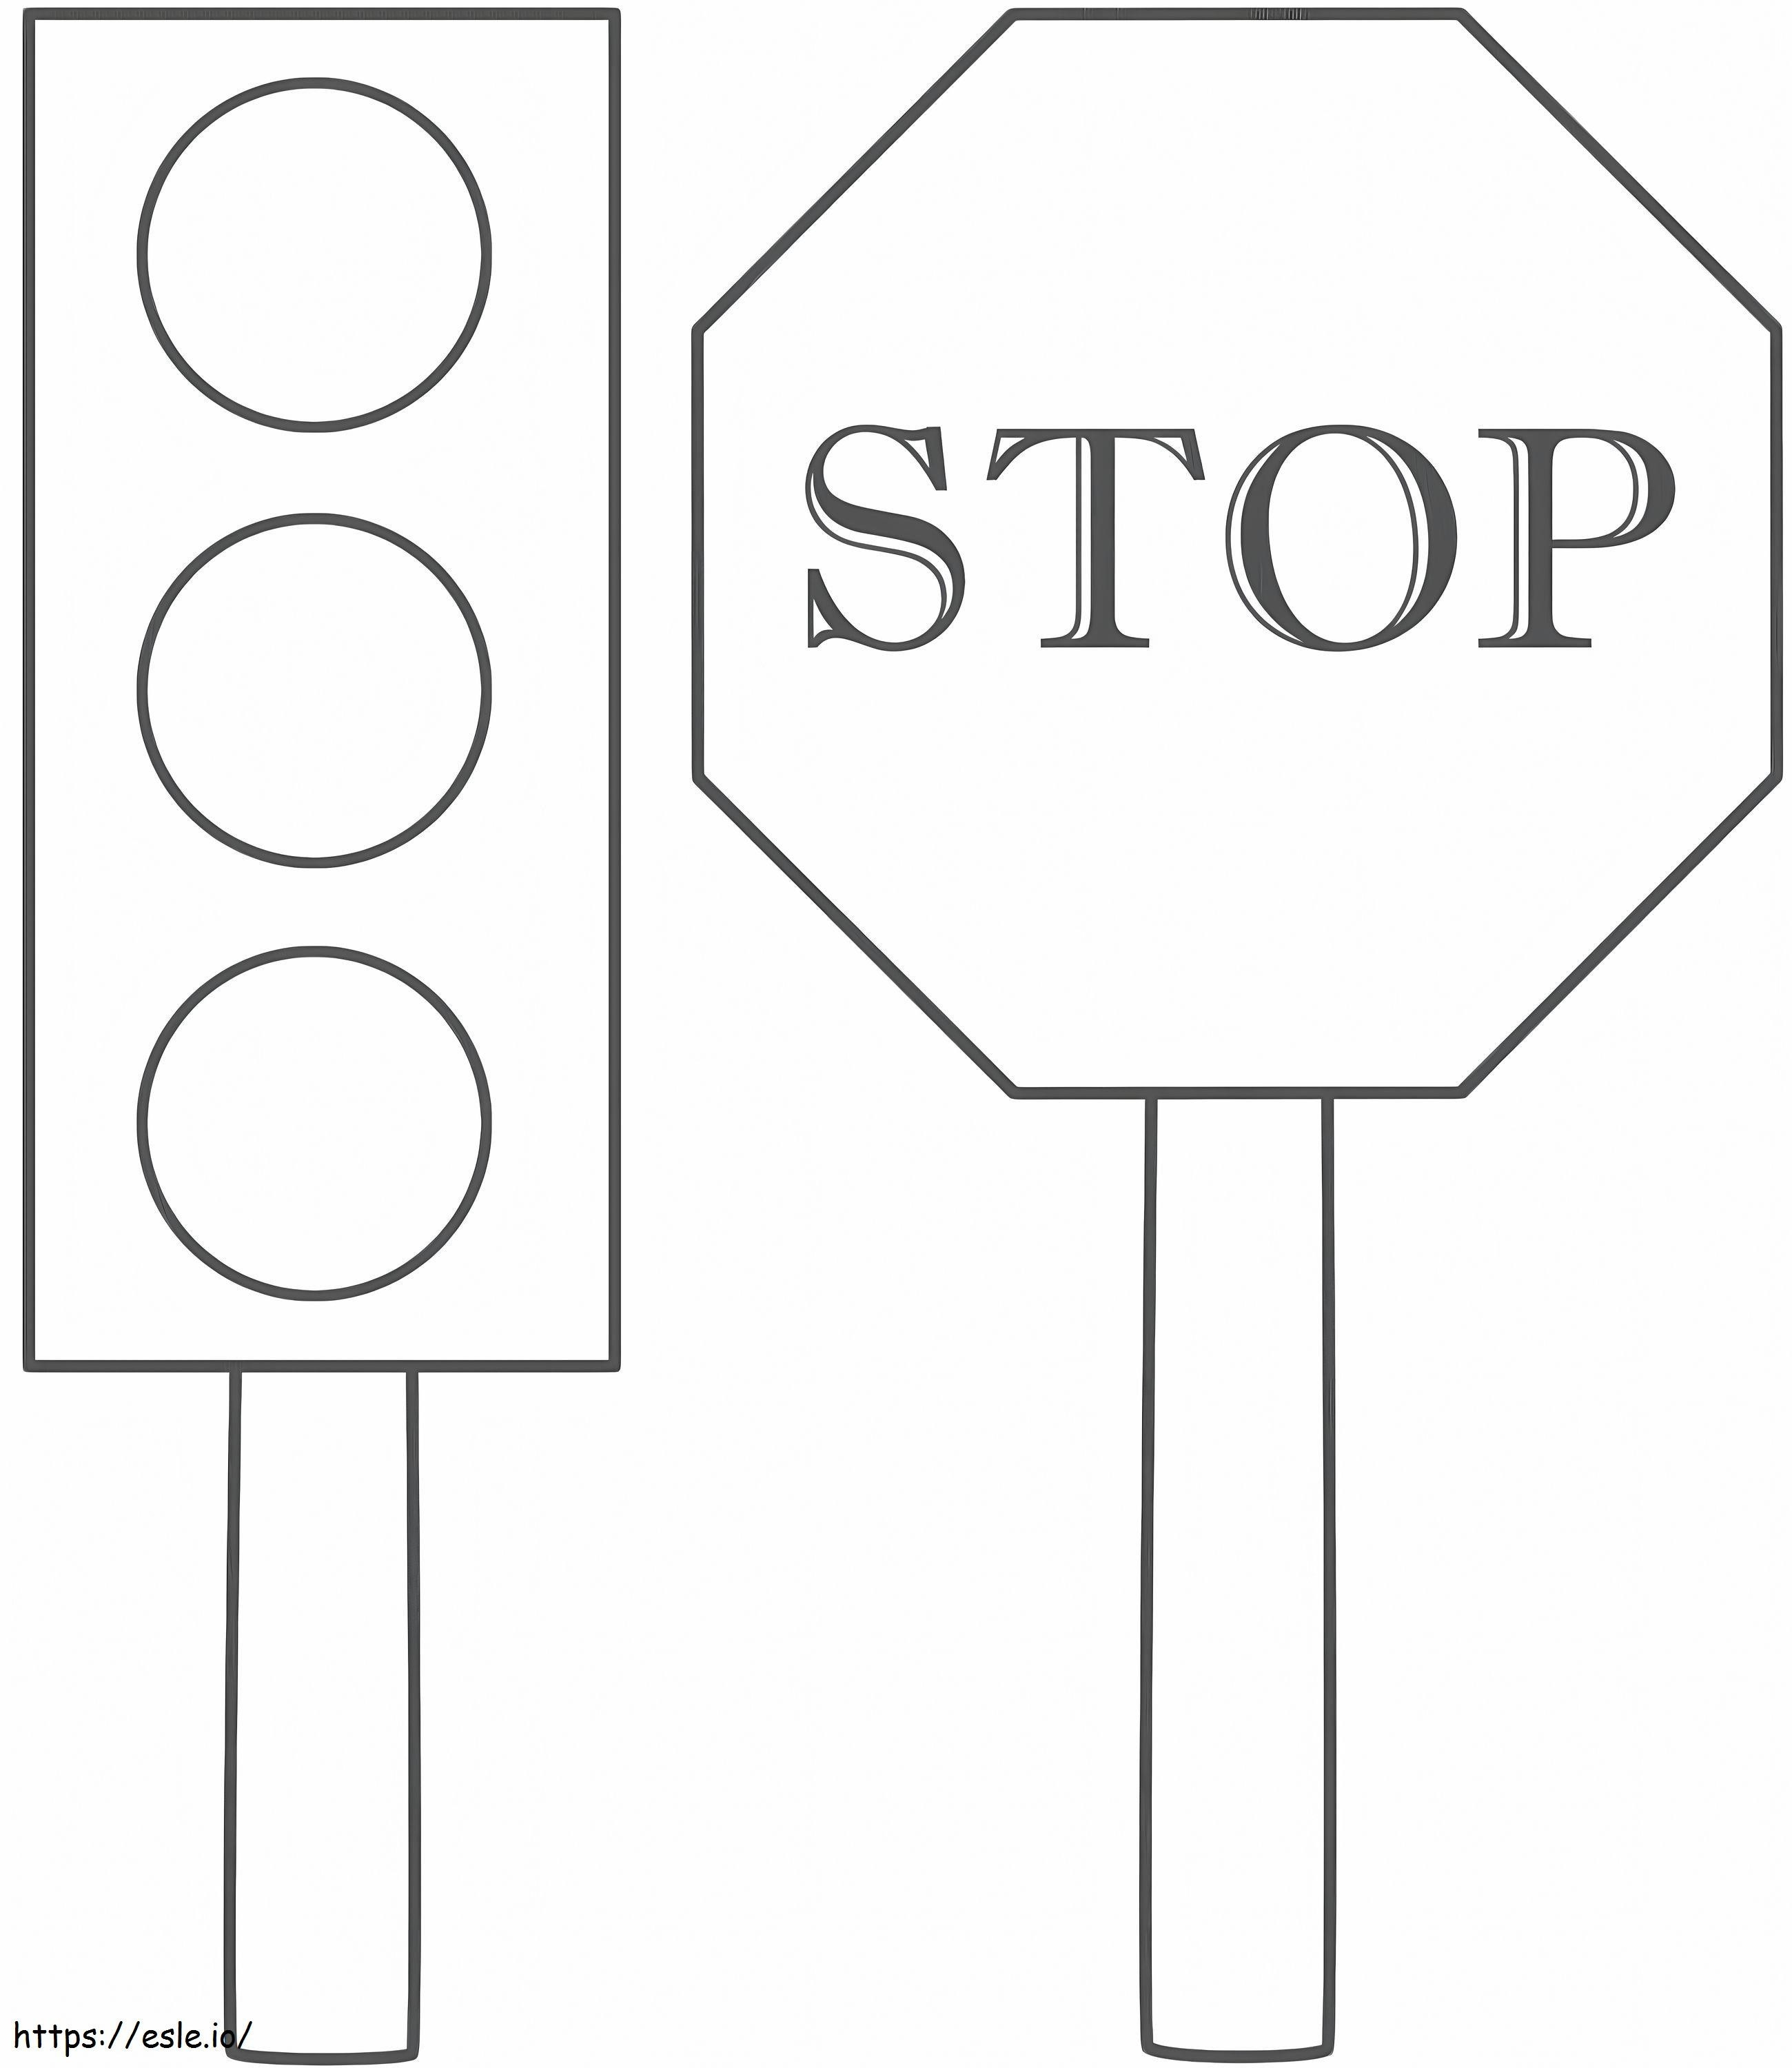 Verkehrssicherheits-Stoppschild ausmalbilder